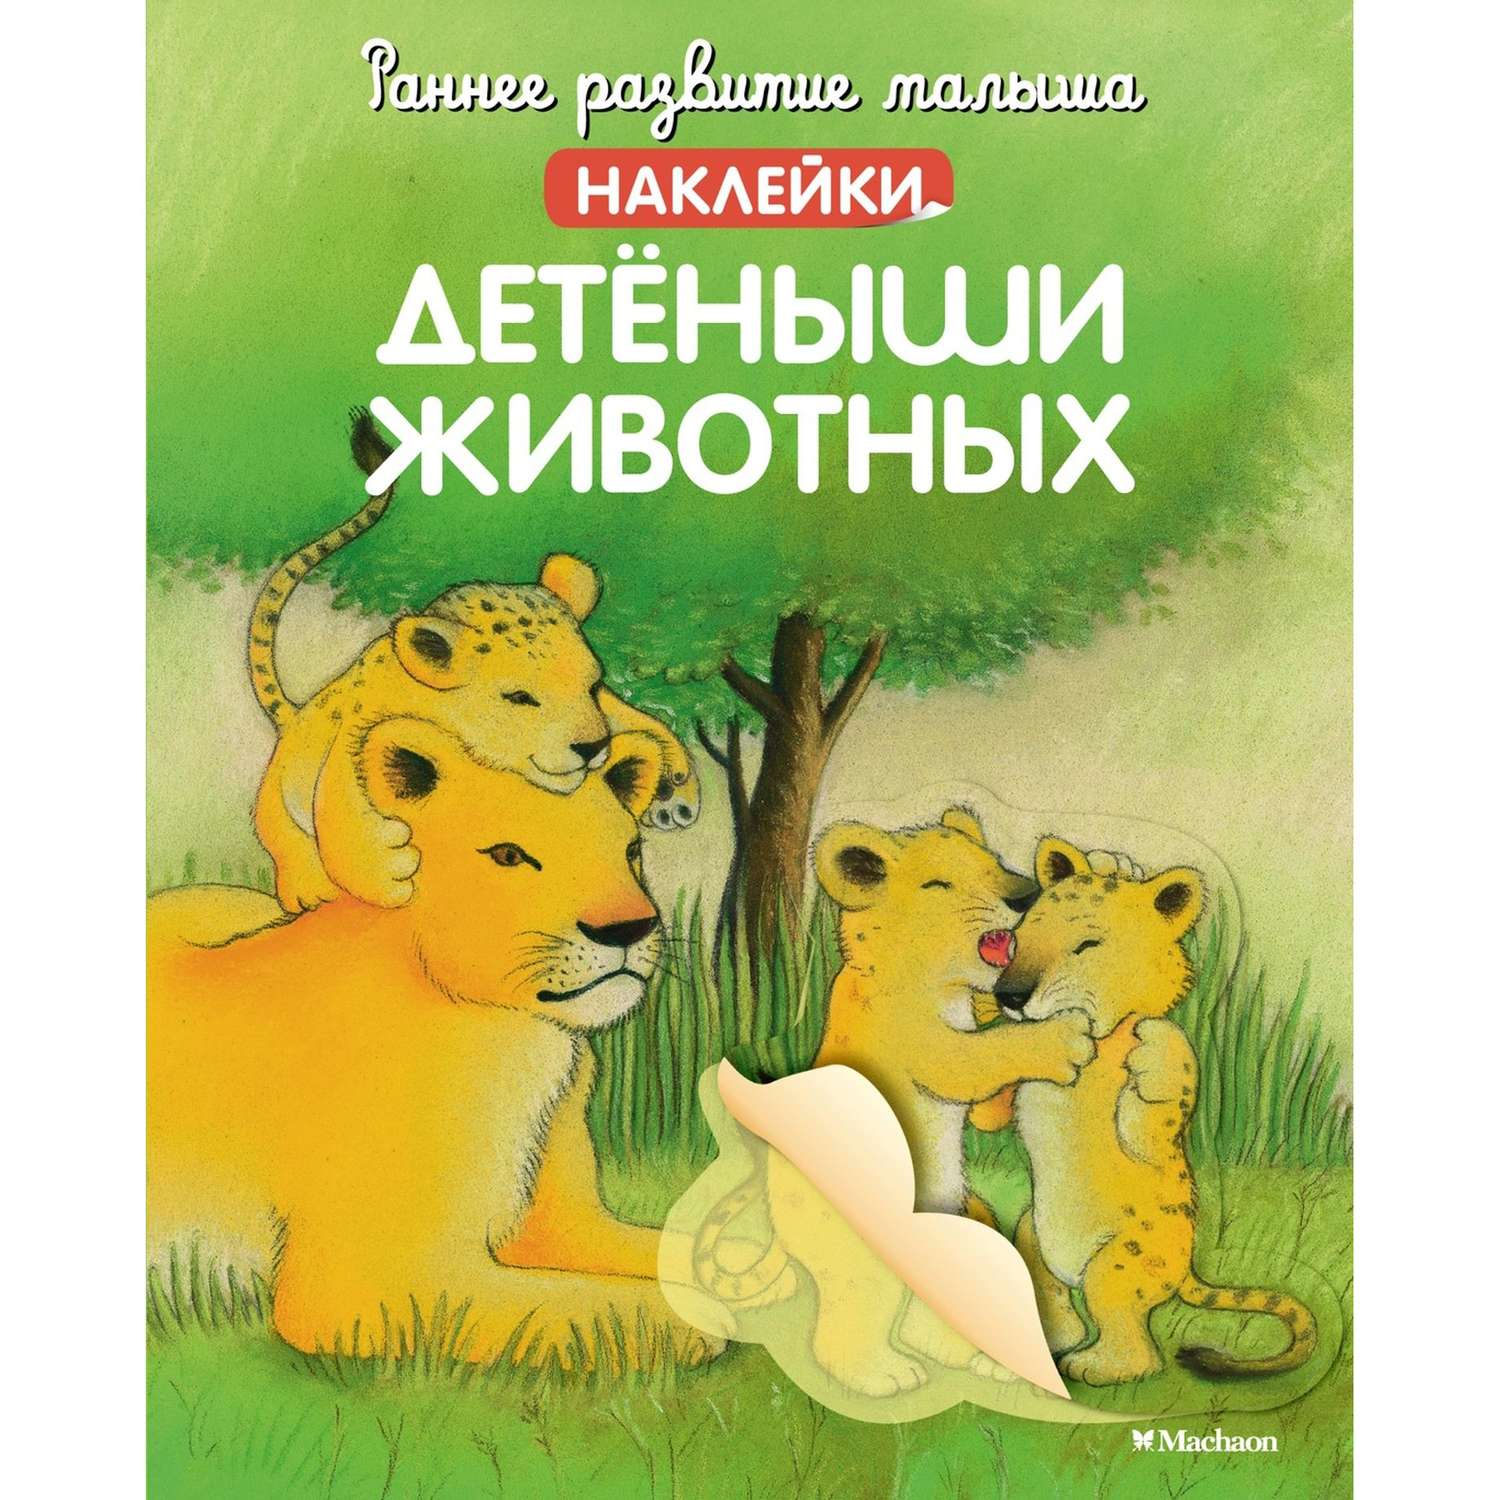 Книга Раннее развитие малыша Детёныши животных с наклейками - фото 1